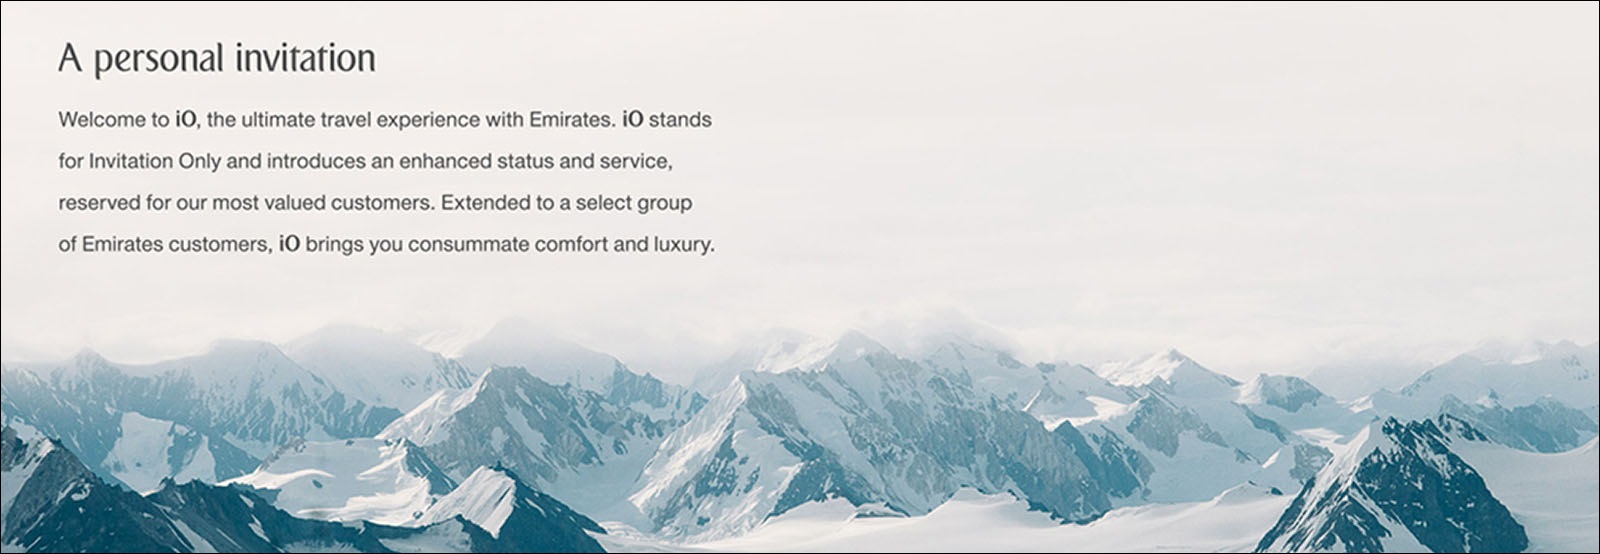 A personal invitation to Emirates iO